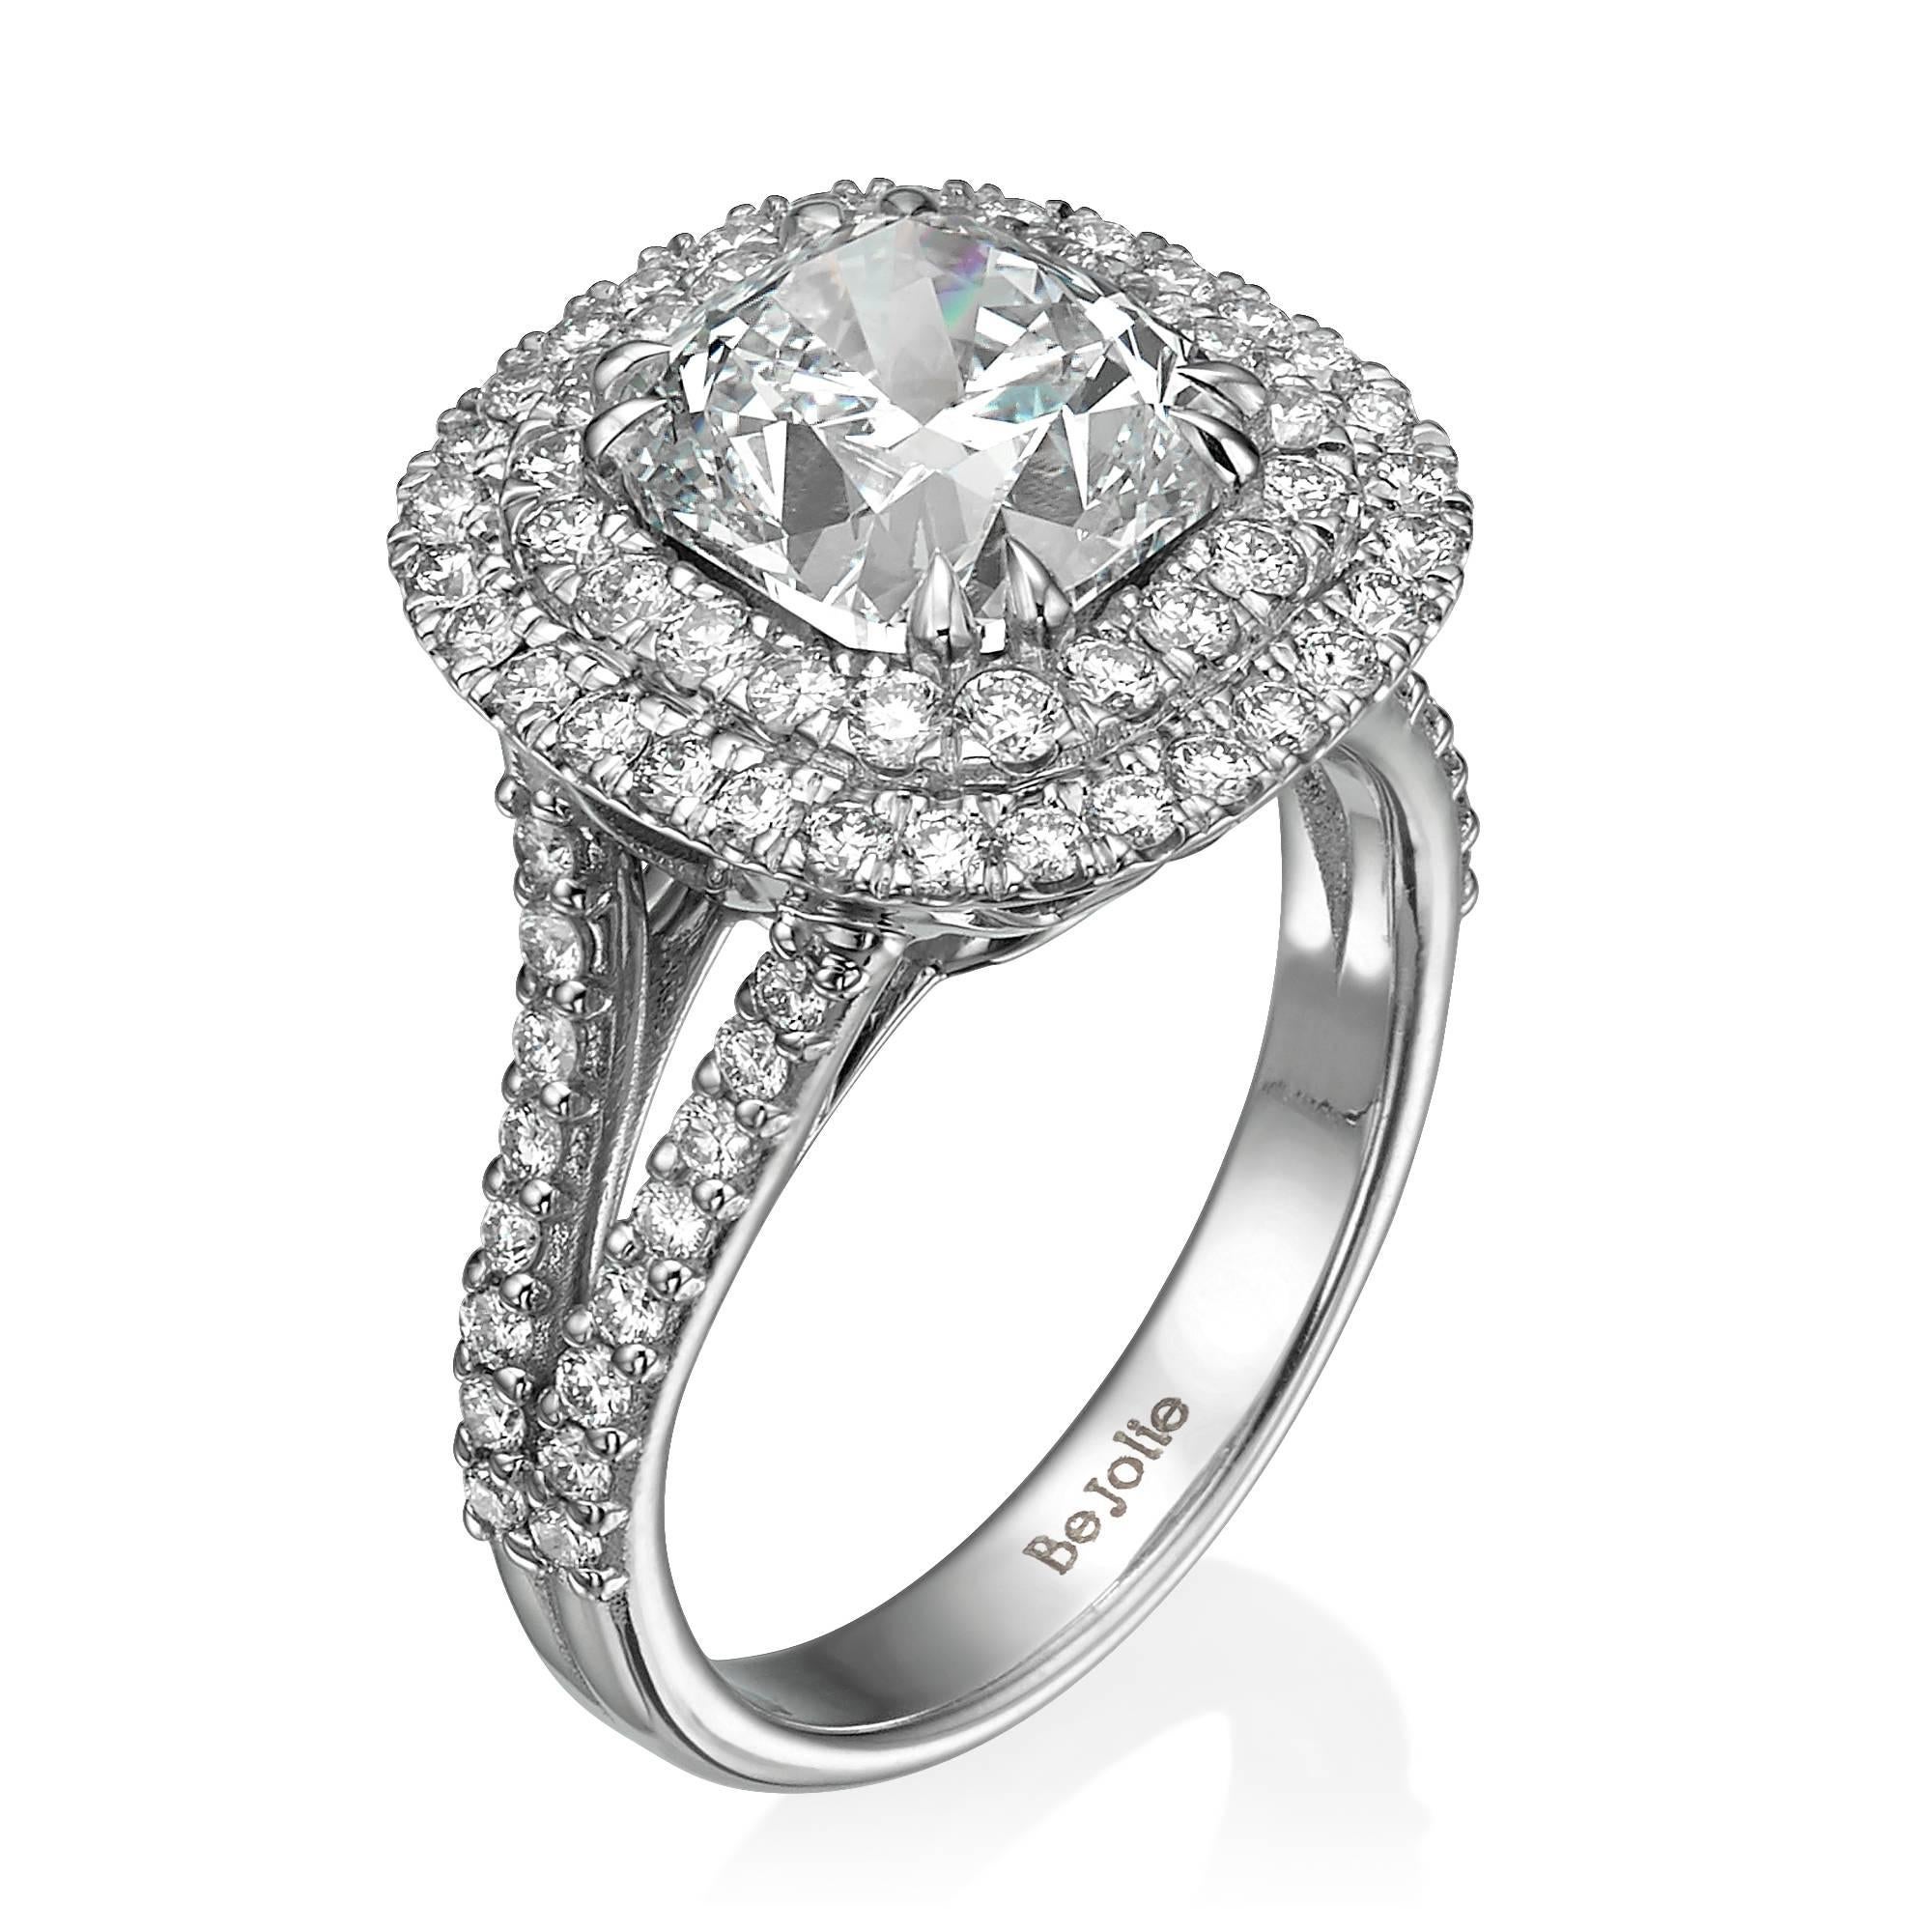 Handgefertigter Ring mit 4,27 Karat Gesamtdiamantengewicht. 
Mit einer atemberaubenden GIA zertifiziert 3,28 Cushion Cut Diamant E VS1 als Center Stein. 
Dieser schöne Diamant ist mit 82 runden Diamanten umgeben und auf 18K Weißgold montiert.